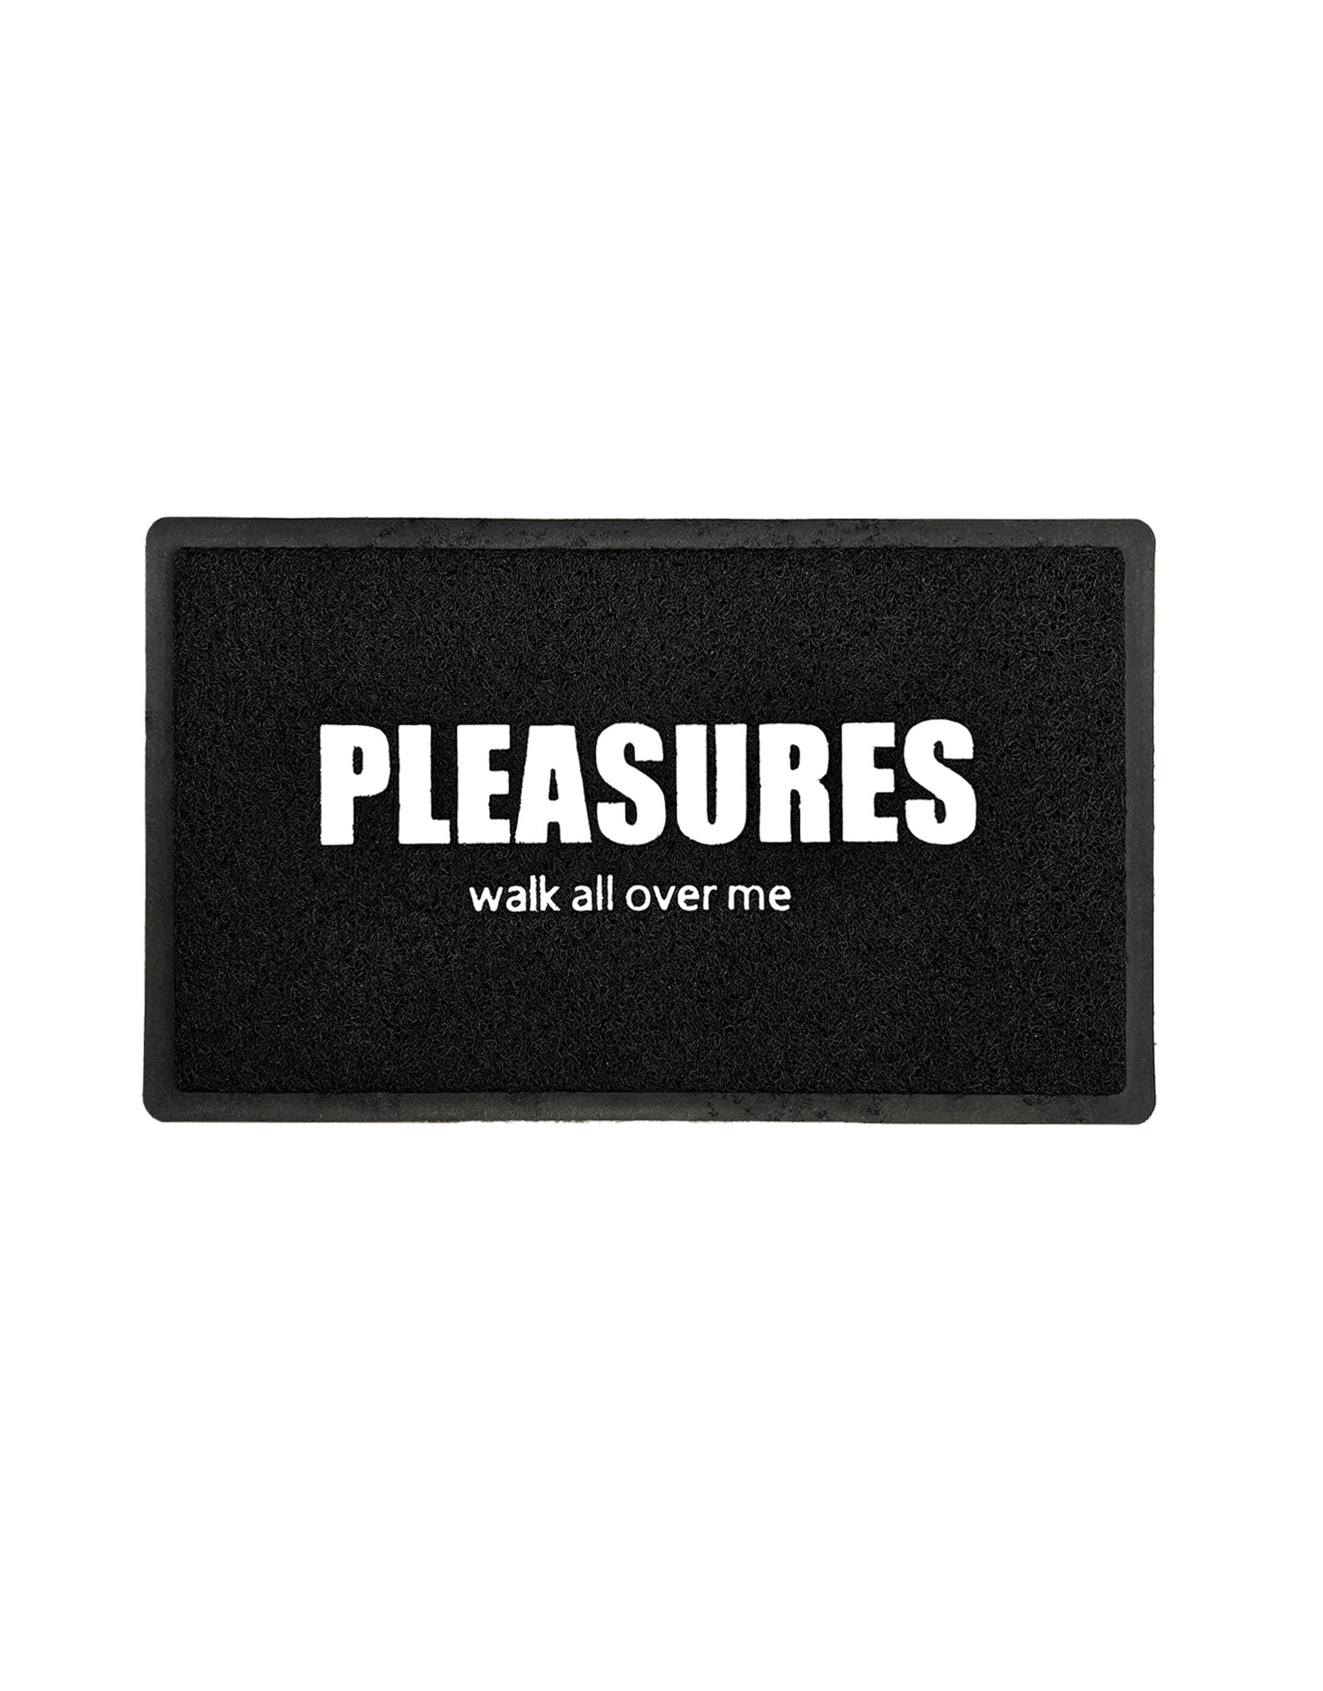 PLEASURES – Over Me rubber door mat